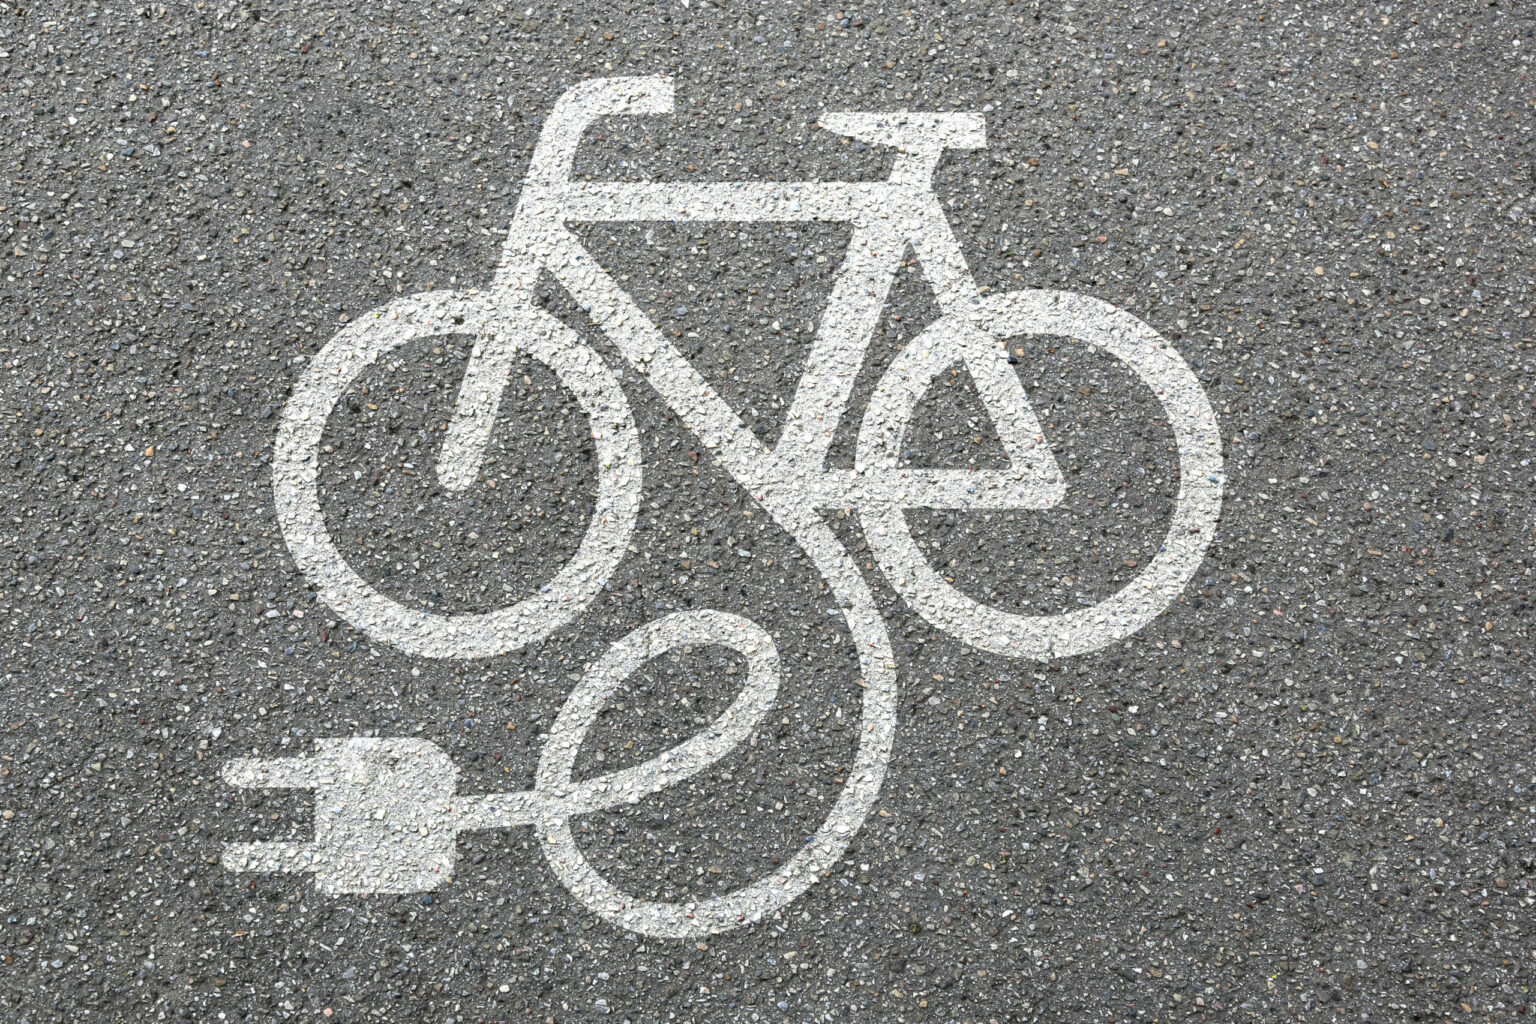 E-bike electric bike symbol on road